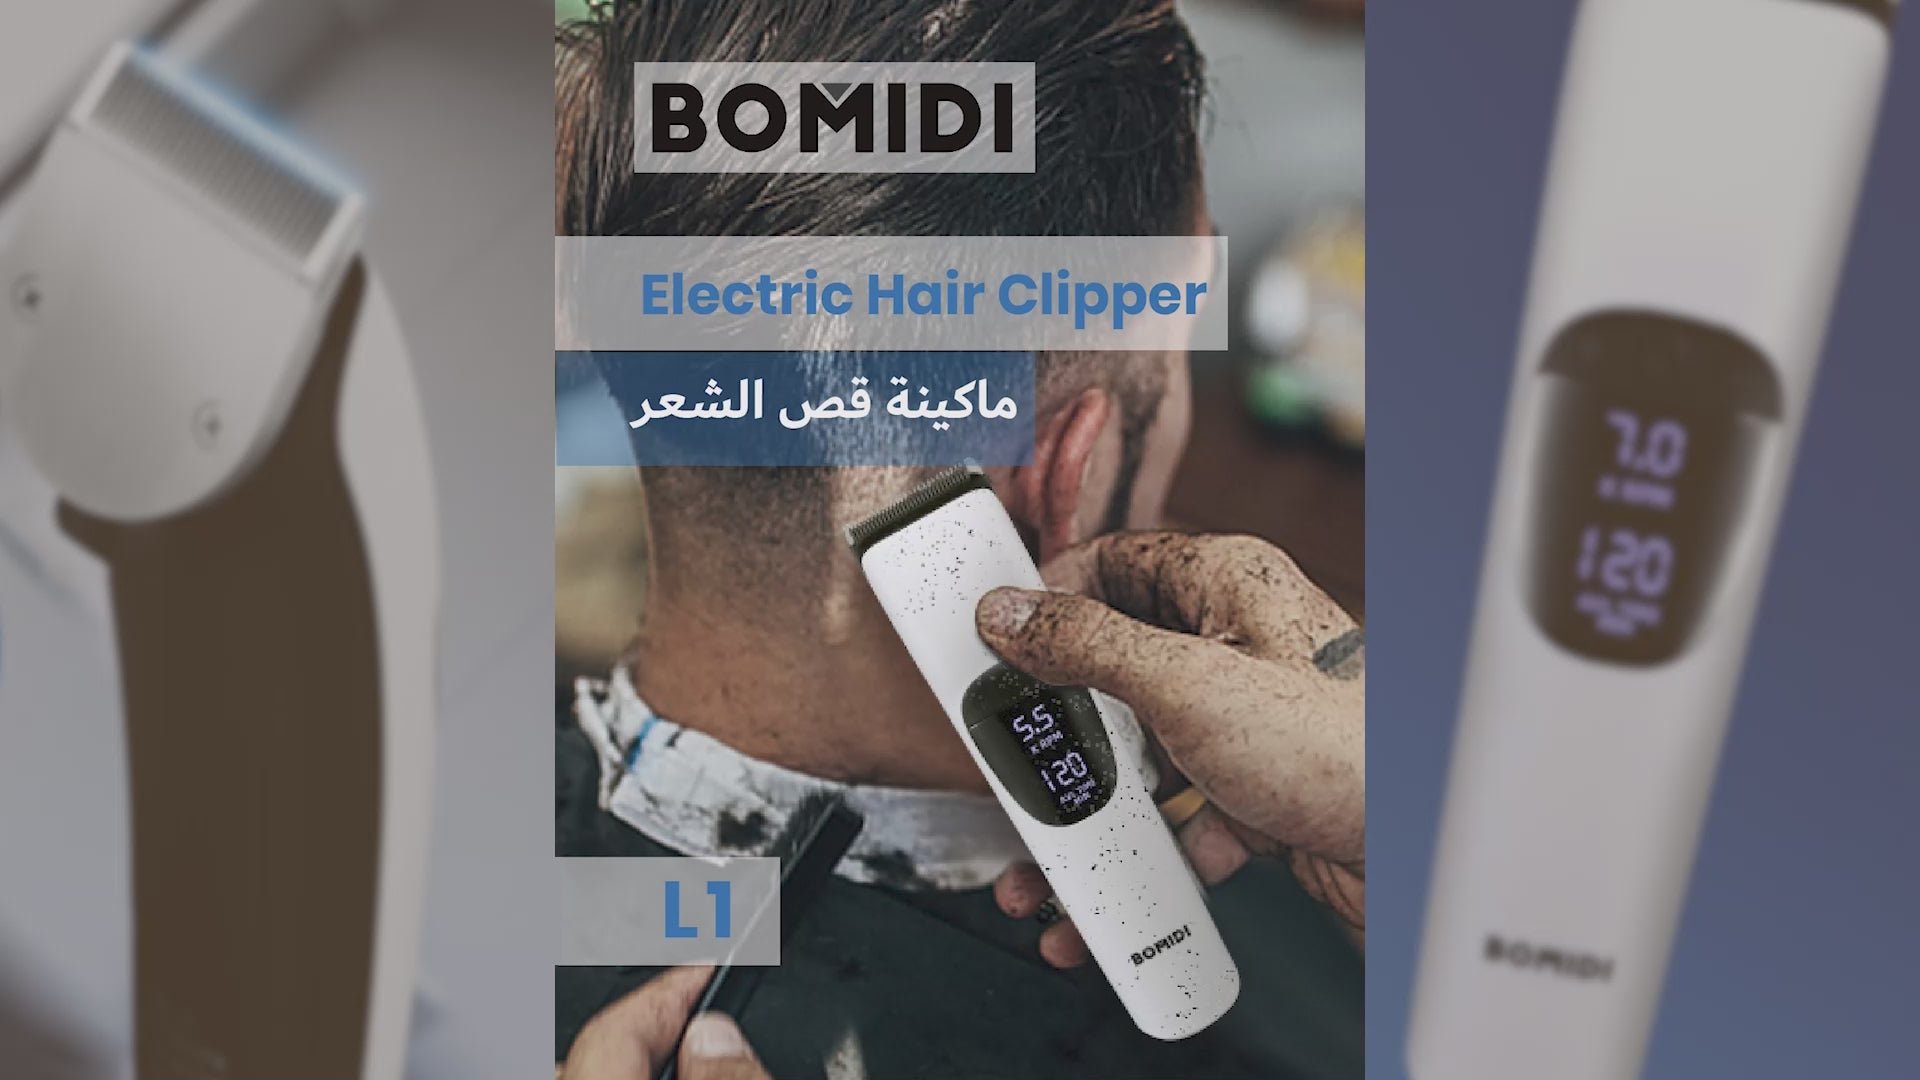 ماكينة قص الشعر الكهربائية من بوميدي L1، ماكينة حلاقة قابلة لإعادة الشحن - أسود